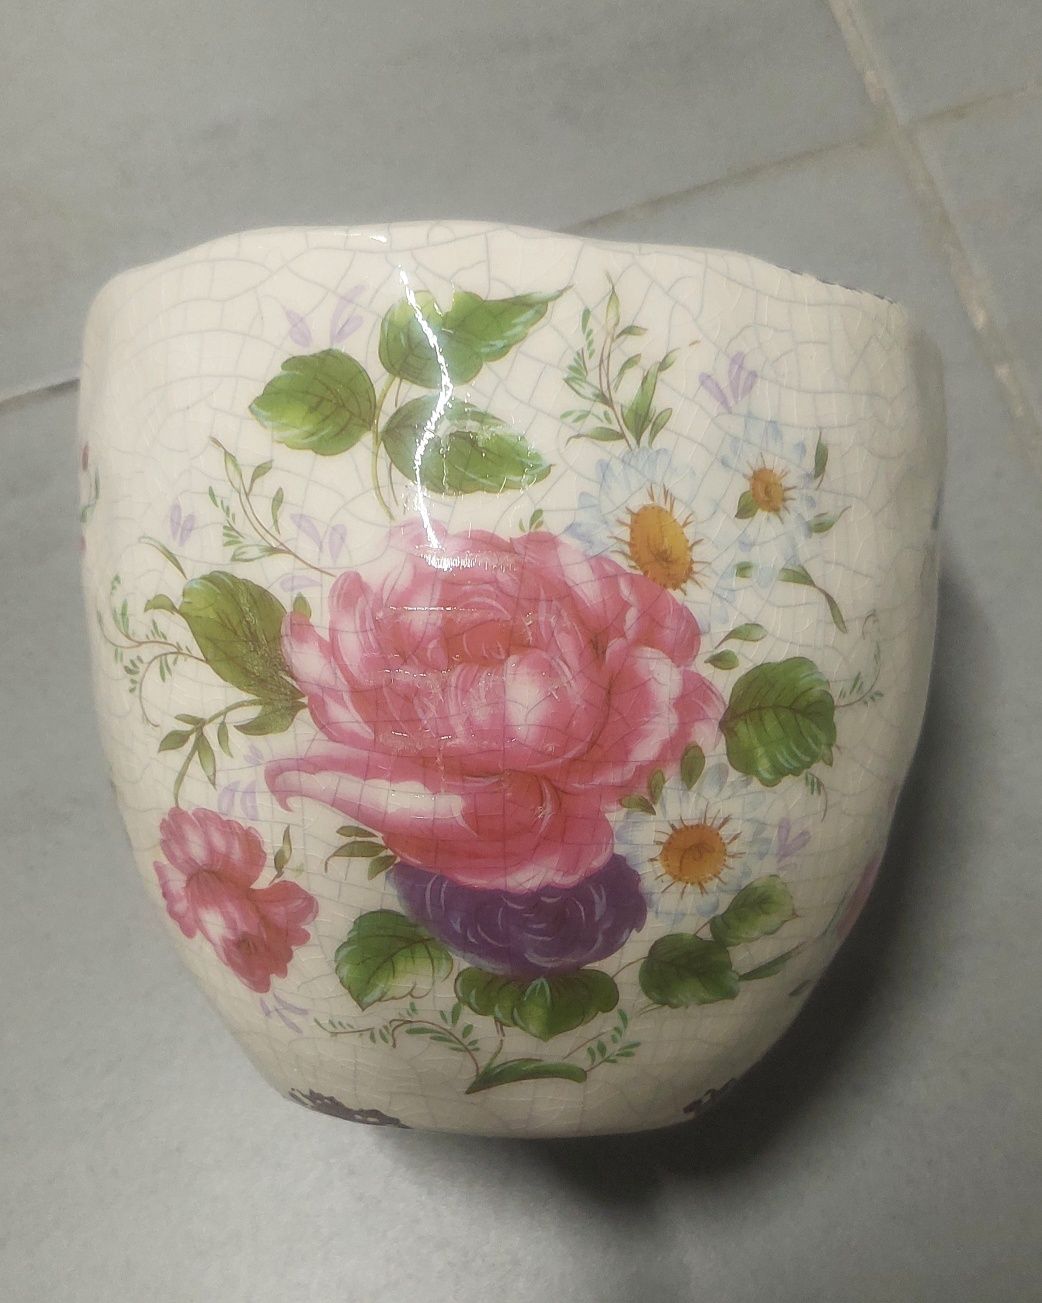 X. śliczna ceramiczna doniczka z dekoracją kwiatową.
Wymiary 12x13 cm.